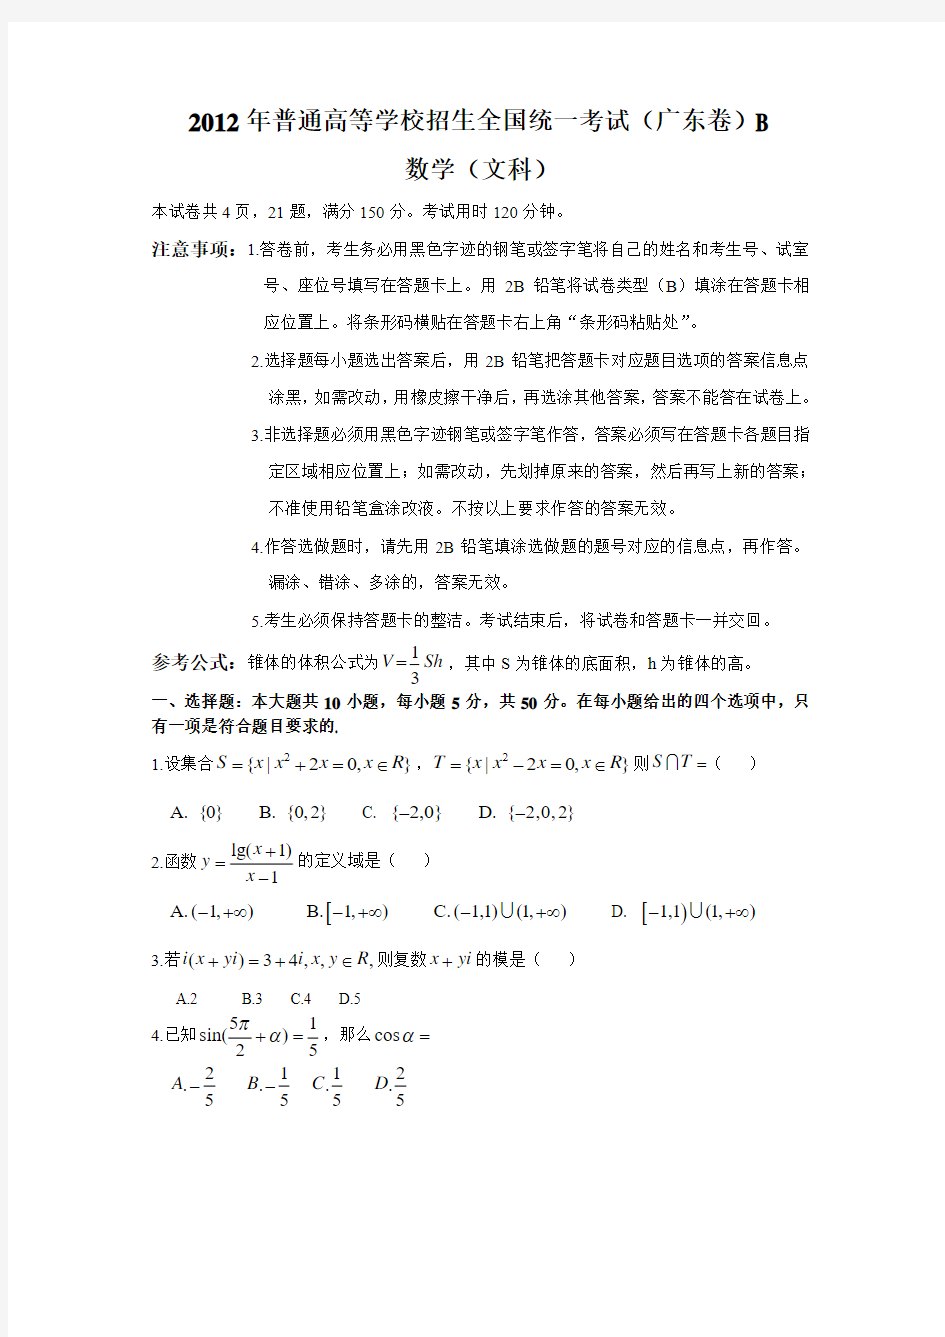 2013年高考真题——文科数学(广东卷)精校版